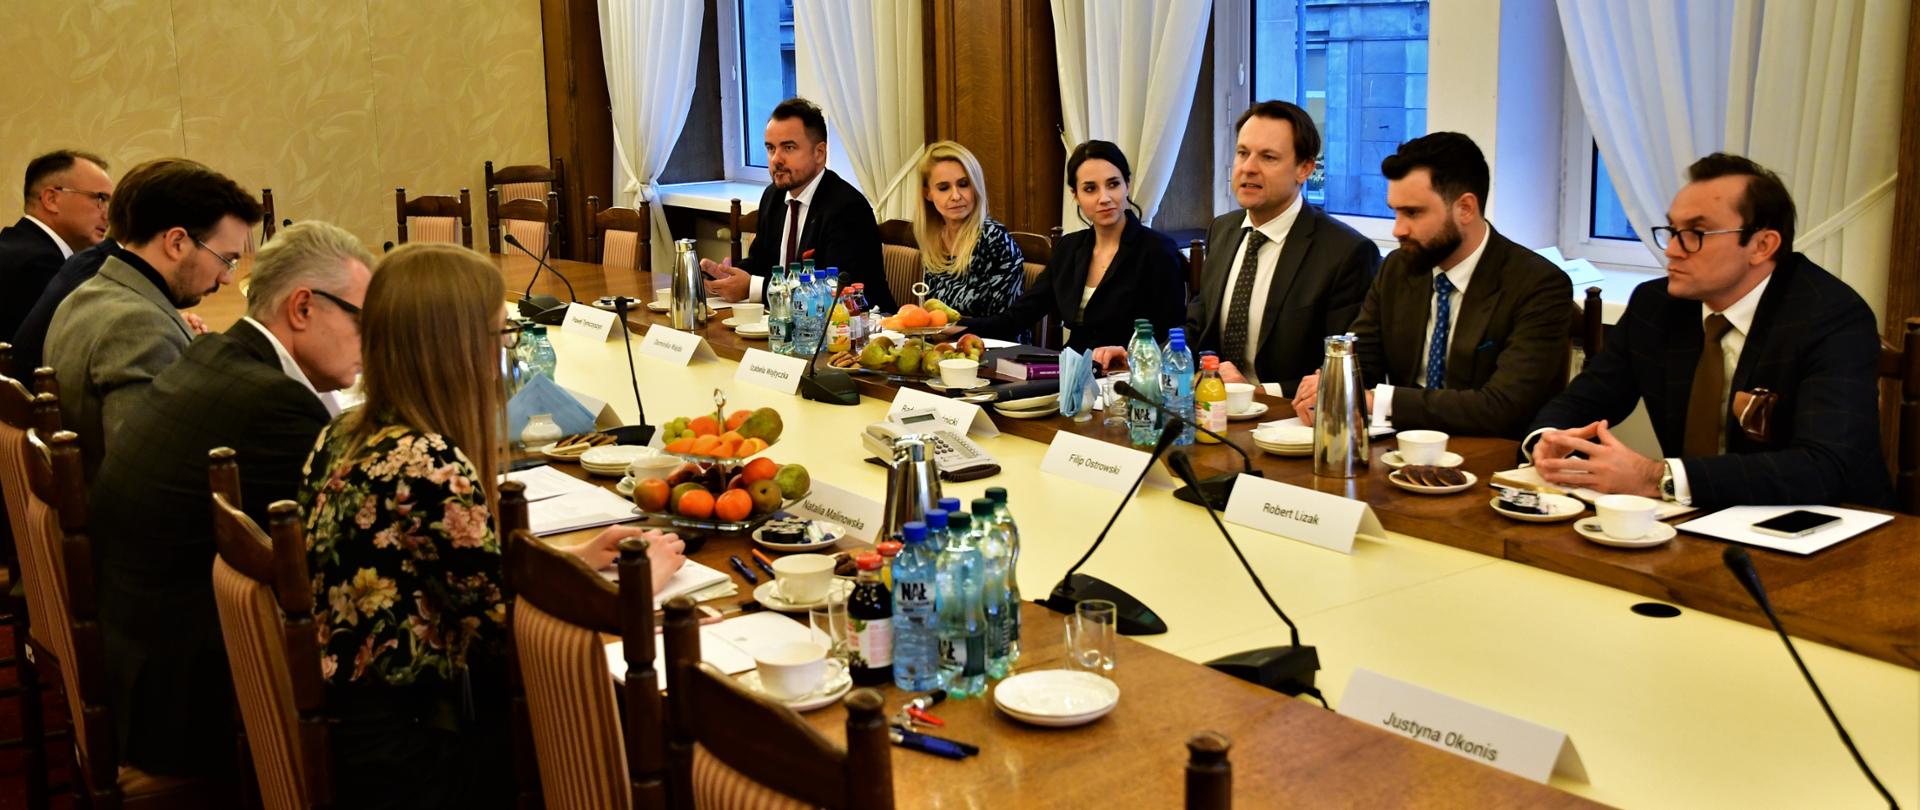 Posiedzenie zespołu eksperckiego Komisji ds reformy nadzoru gospodarczego